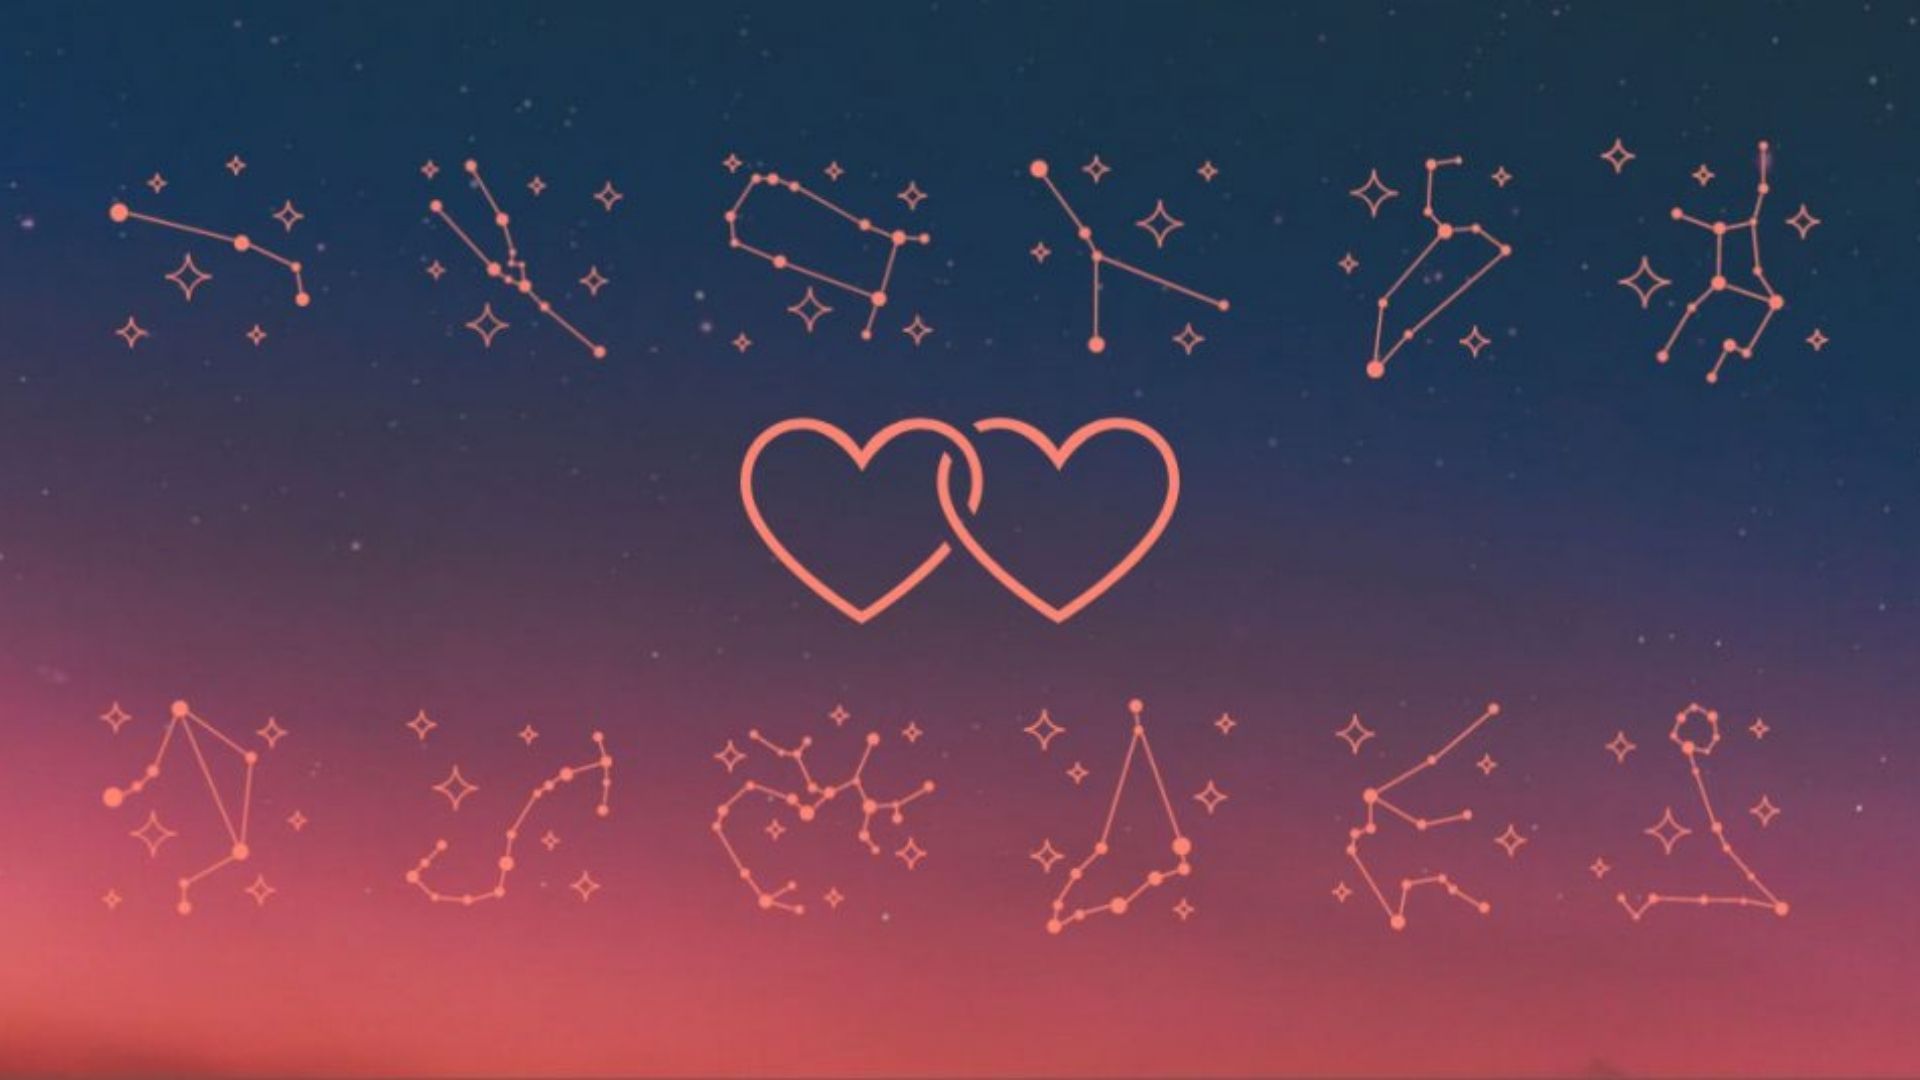 Horóscopo do amor: signos que combinam e como cada signo se relaciona -  Revista Marie Claire